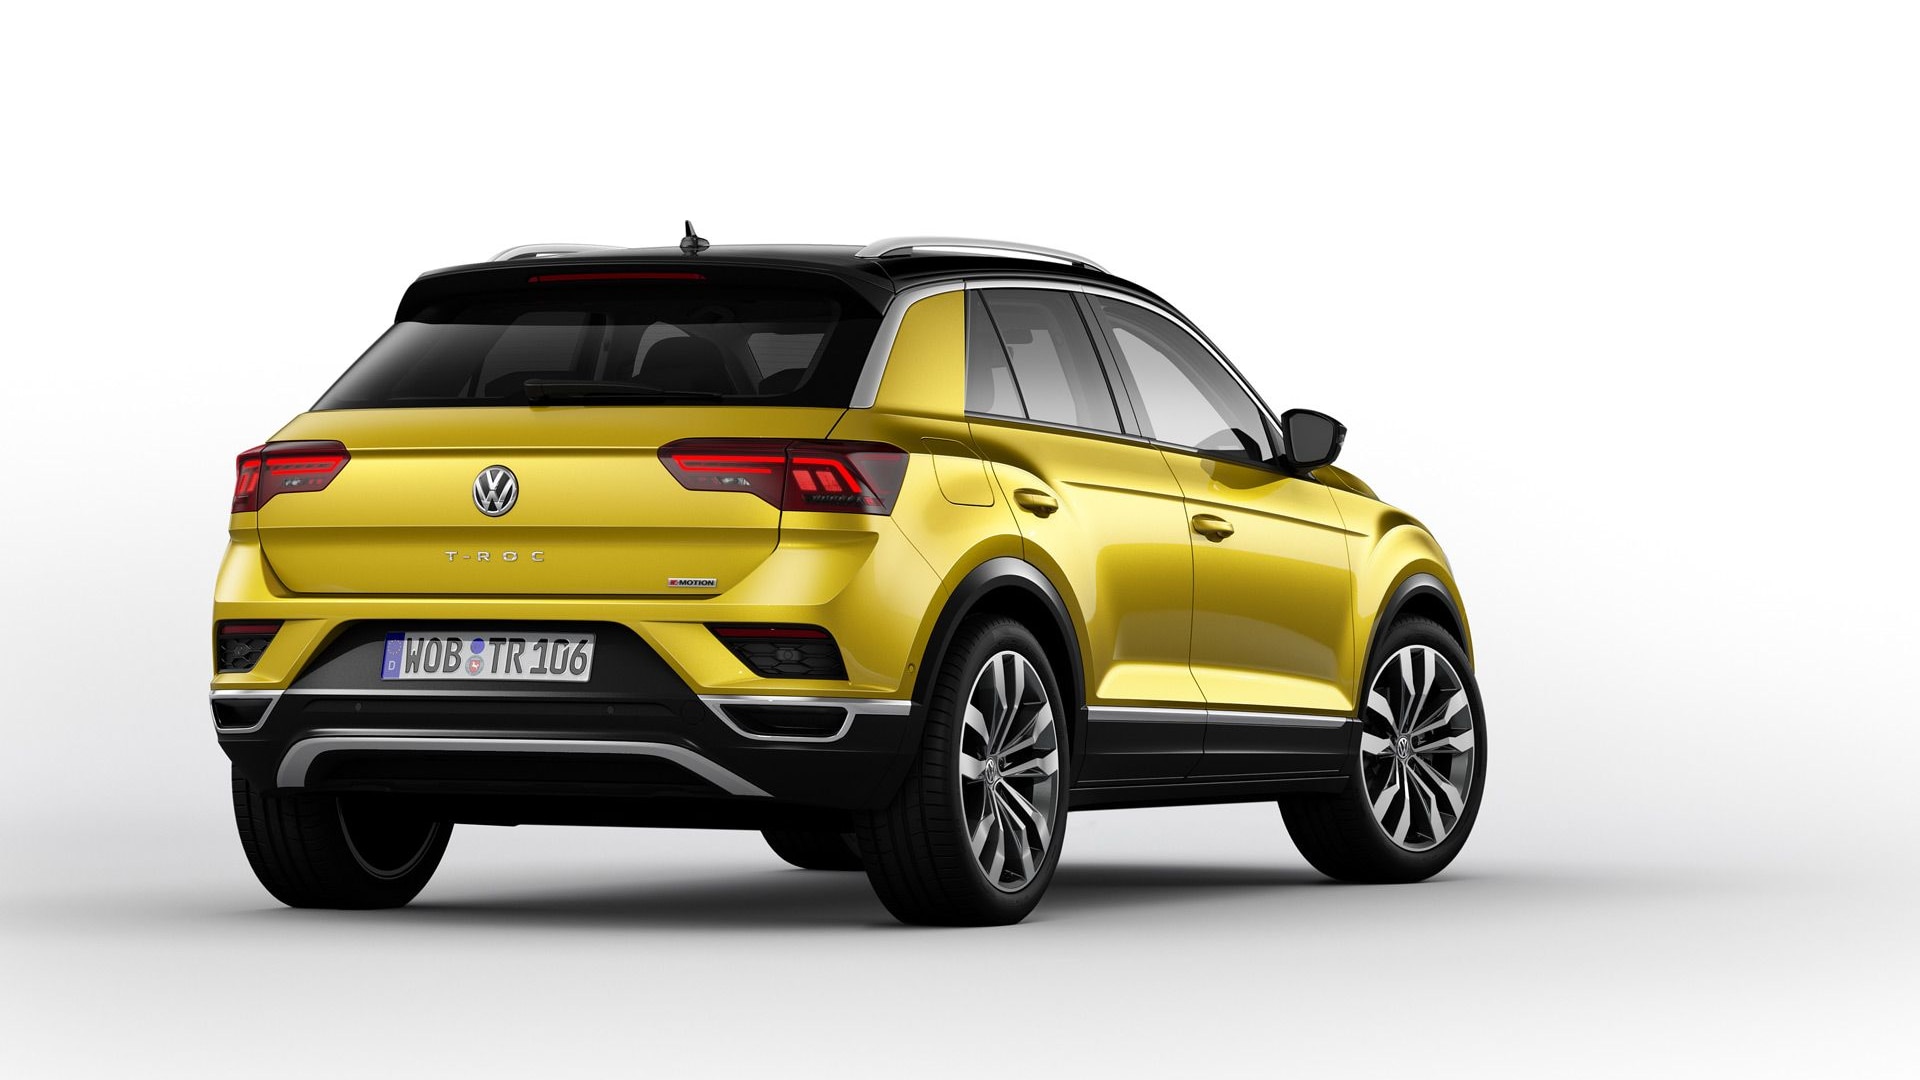 2018 Volkswagen T-Roc Shows VW's Funkier Side in Frankfurt